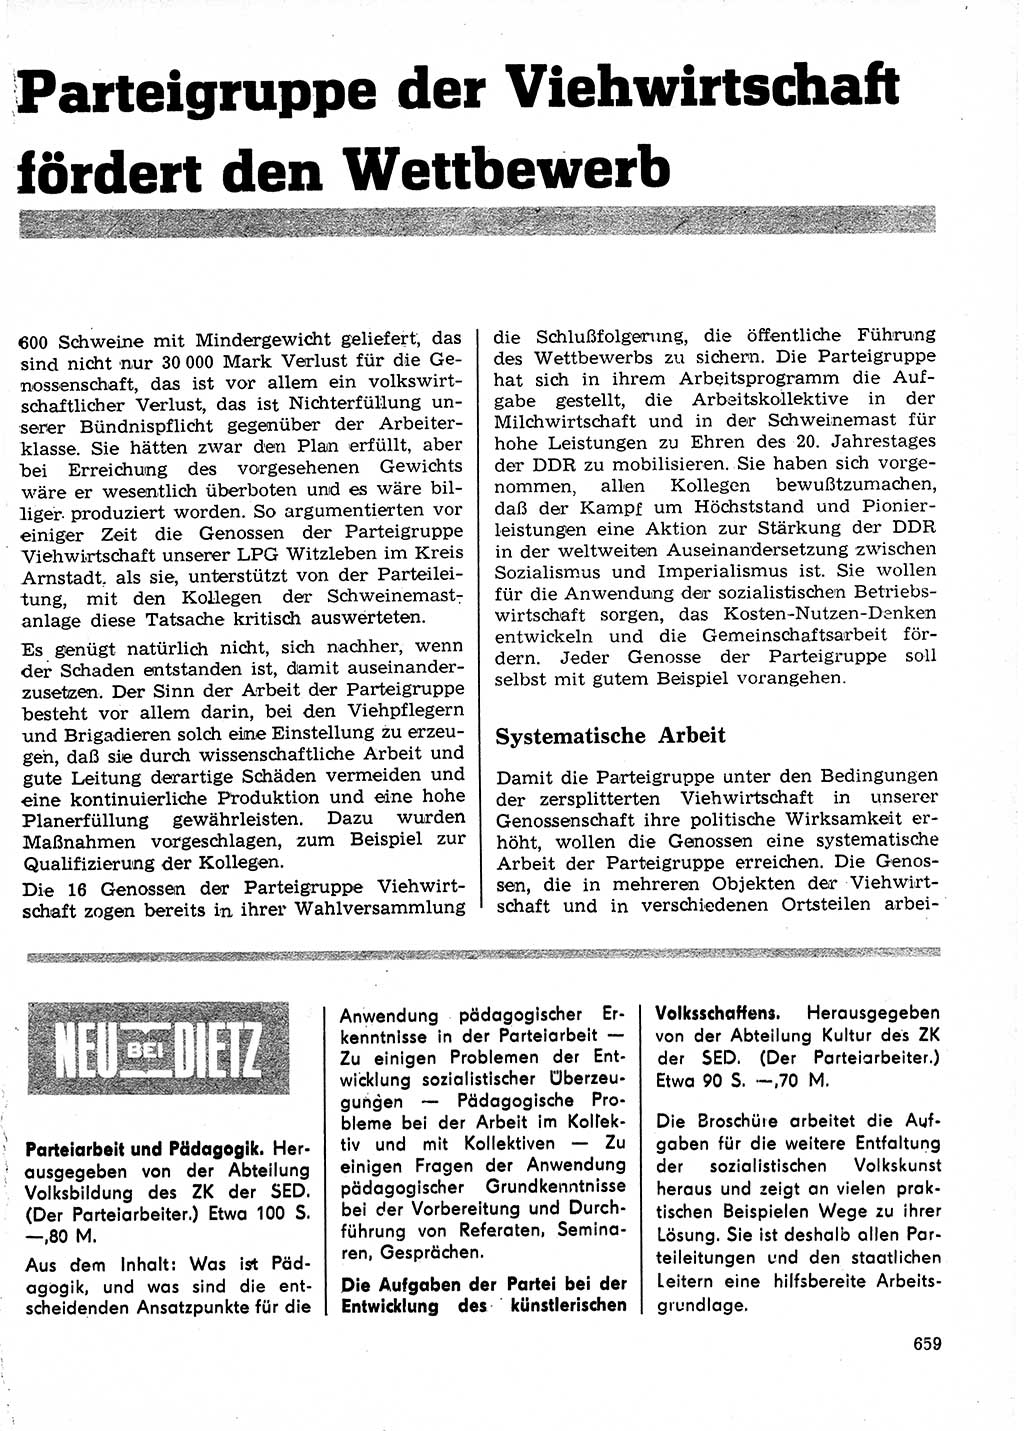 Neuer Weg (NW), Organ des Zentralkomitees (ZK) der SED (Sozialistische Einheitspartei Deutschlands) für Fragen des Parteilebens, 24. Jahrgang [Deutsche Demokratische Republik (DDR)] 1969, Seite 659 (NW ZK SED DDR 1969, S. 659)